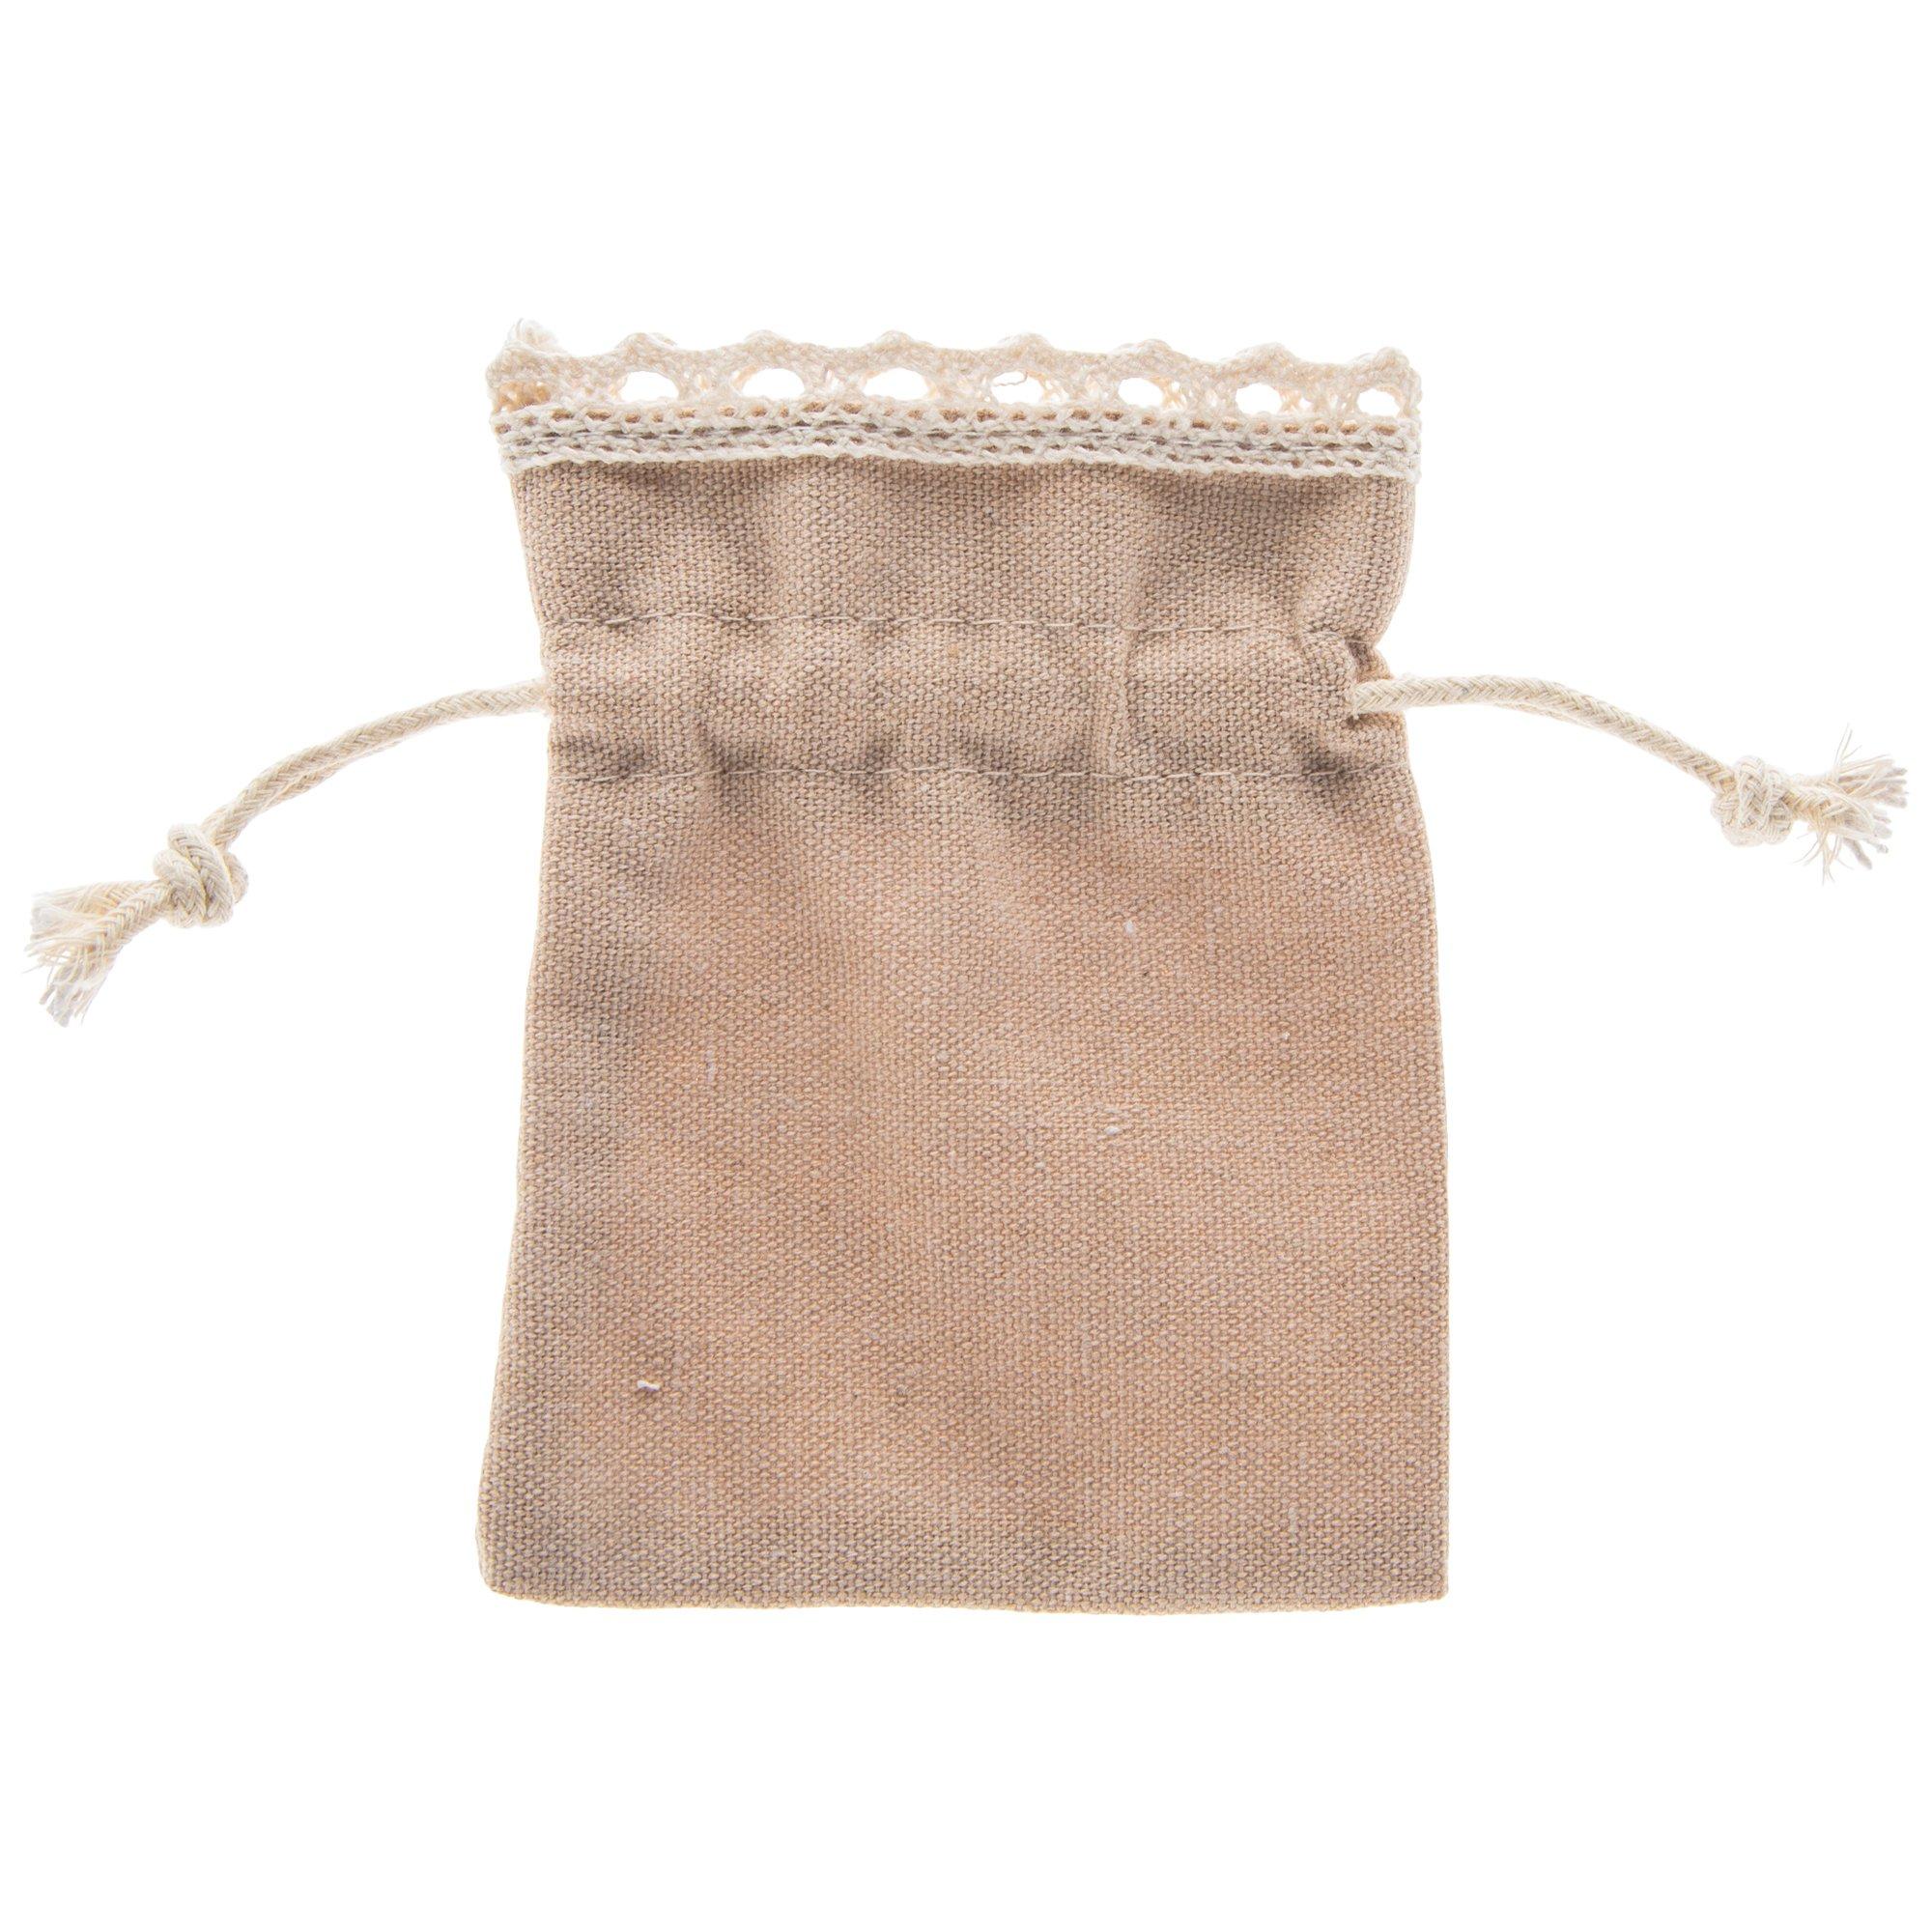 Khaki Jewelry Bags With Lace Trim | Hobby Lobby | 829226